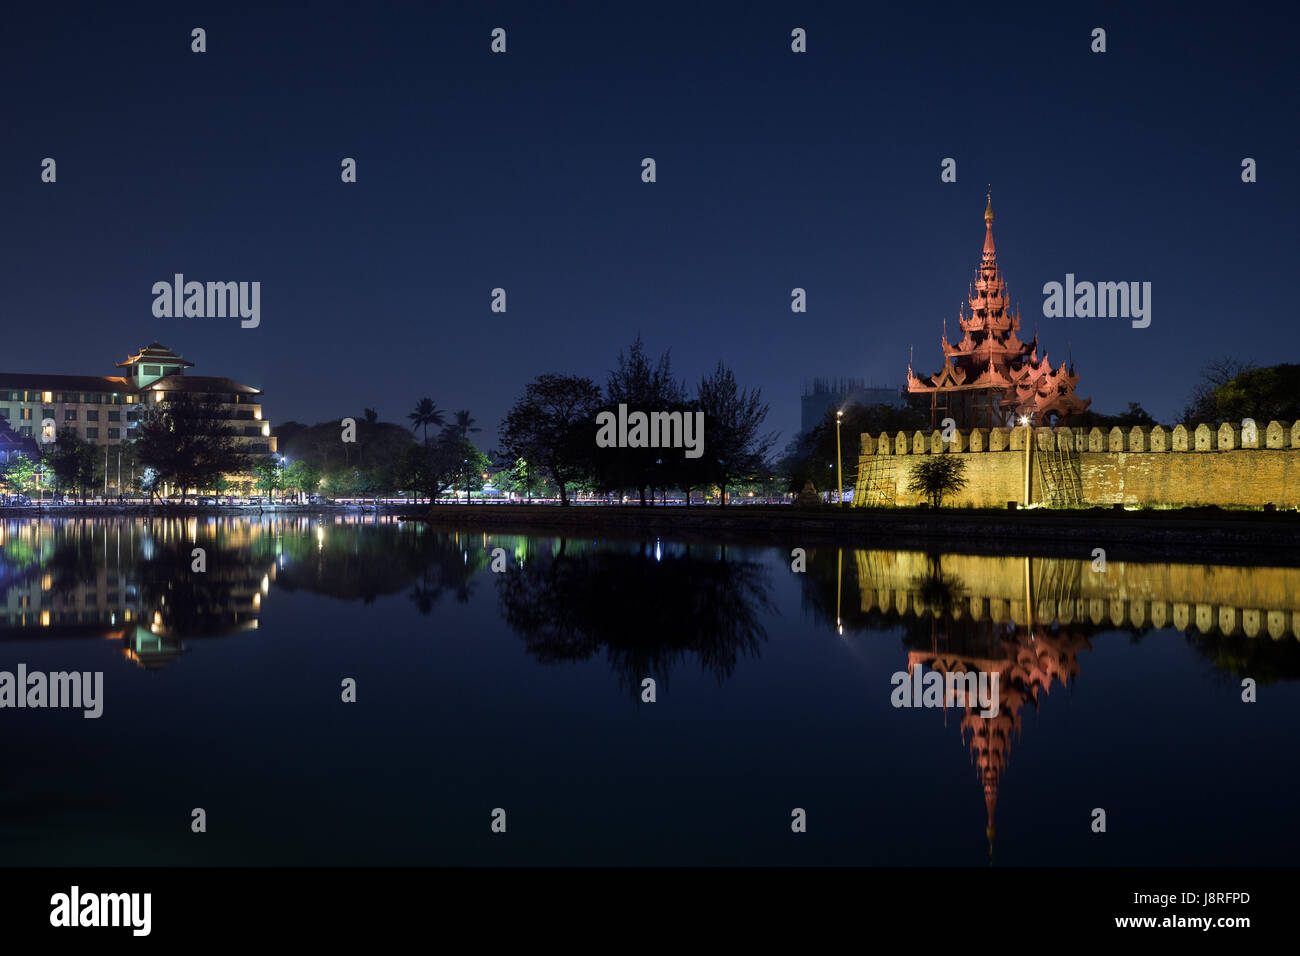 Stadt und beleuchtete Zitadelle-Wand, Bastion und Pyatthat (Turm) und Graben in den Königspalast Mandalay in Mandalay, Myanmar (Burma) in der Nacht. Kopieren Sie Raum. Stockfoto